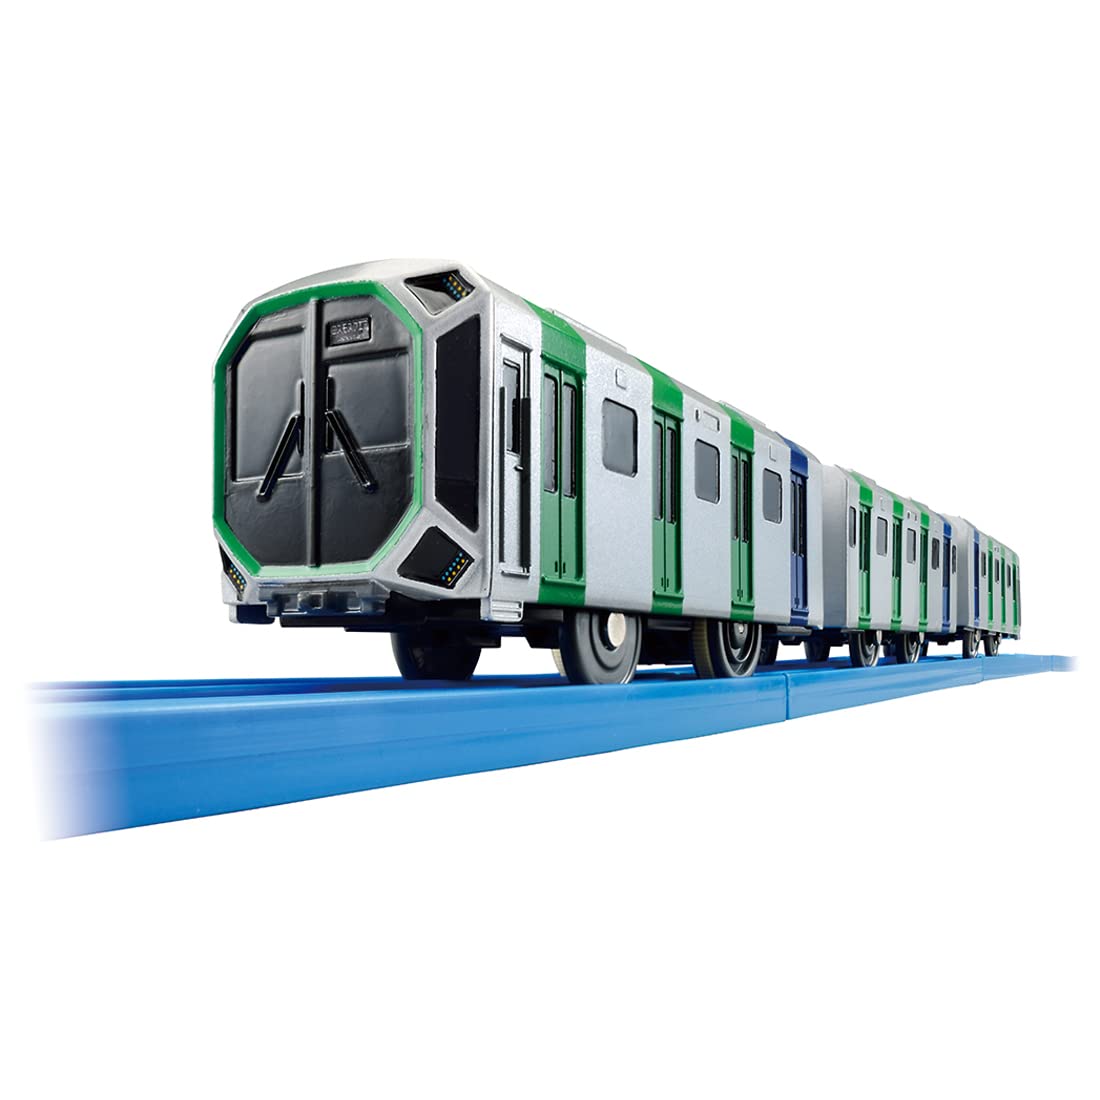 タカラトミー プラレール S-37 Osaka Metro 中央線400系 電車 おもちゃ 3歳以上